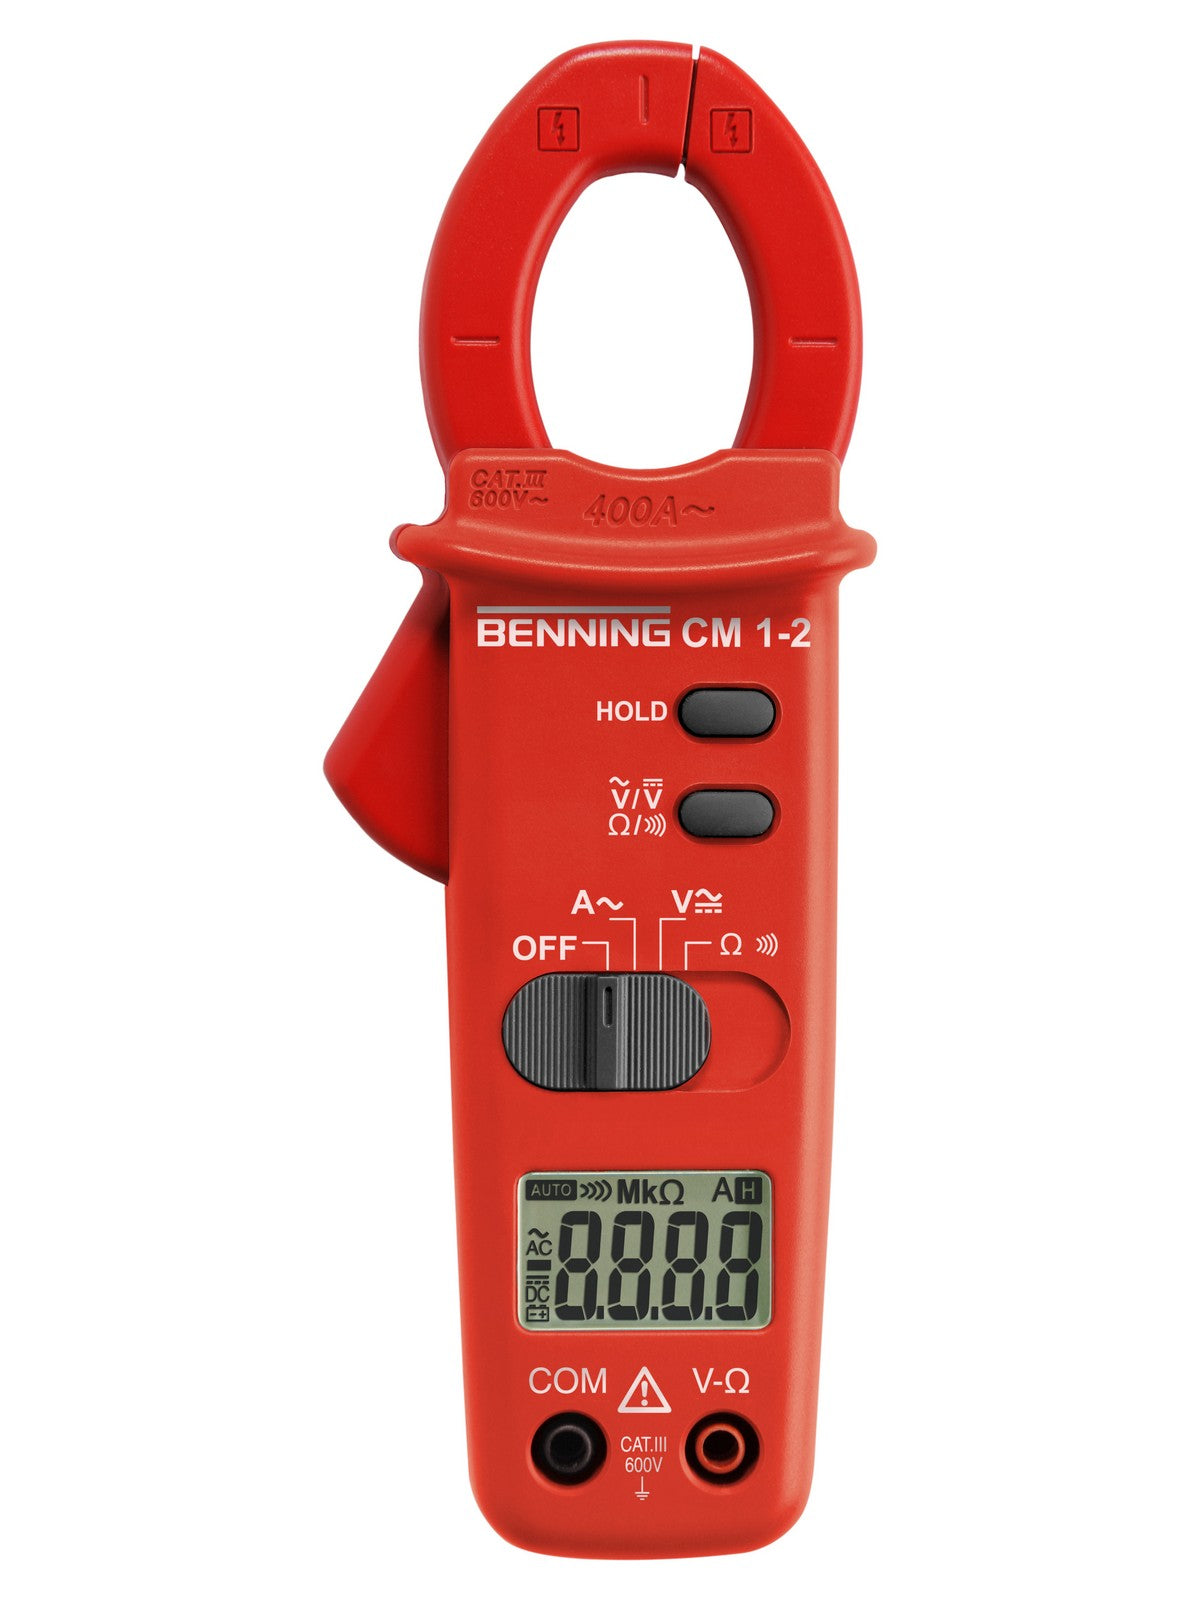 Digital-Stromzangen-Multimeter CM 1-2 von Benning. Messeingänge für Spannung, Widerstand, Durchgangs- und Diodenprüfung.